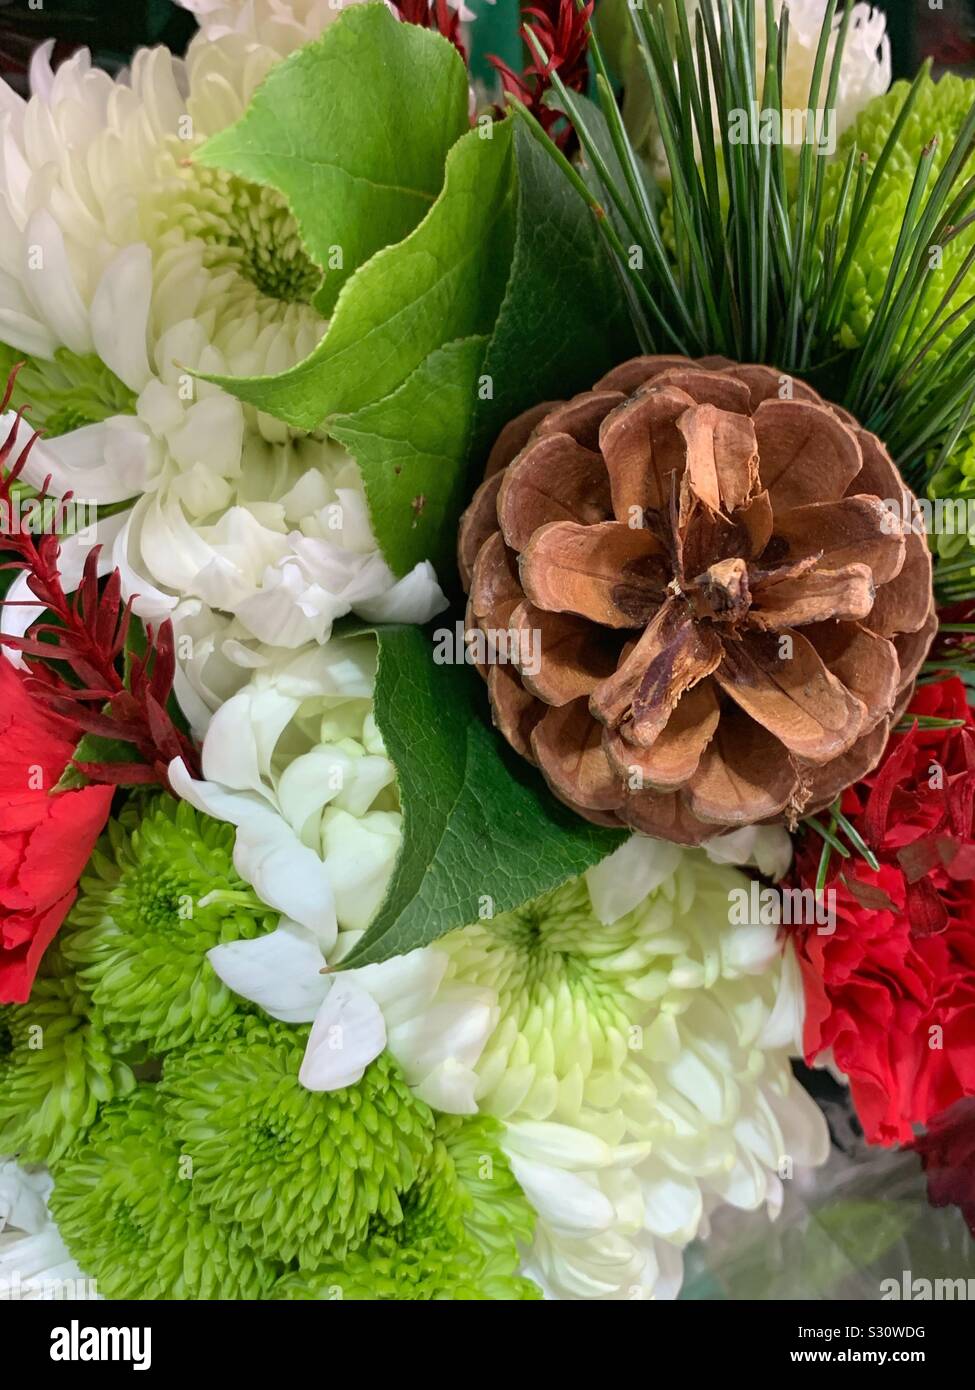 Allegro il rosso, il verde e i fiori bianchi in un bouquet di fiori con una pigna Foto Stock